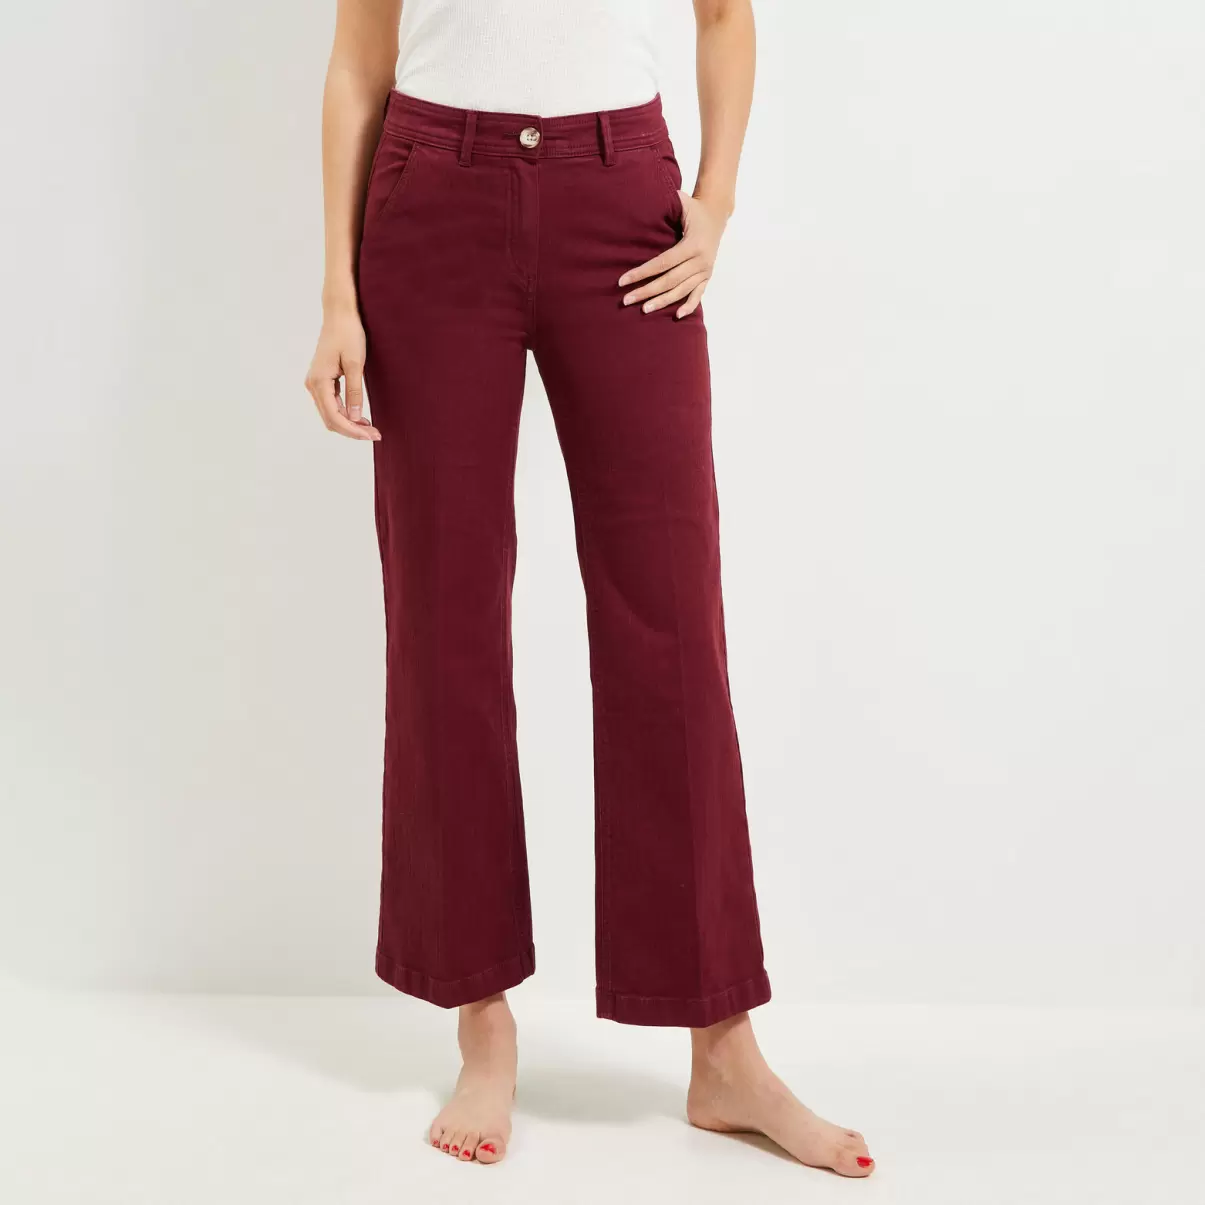 Femme Esthétique Pantalon Flare Raccourci Femme Grain De Malic Jeans Rouge Noirci